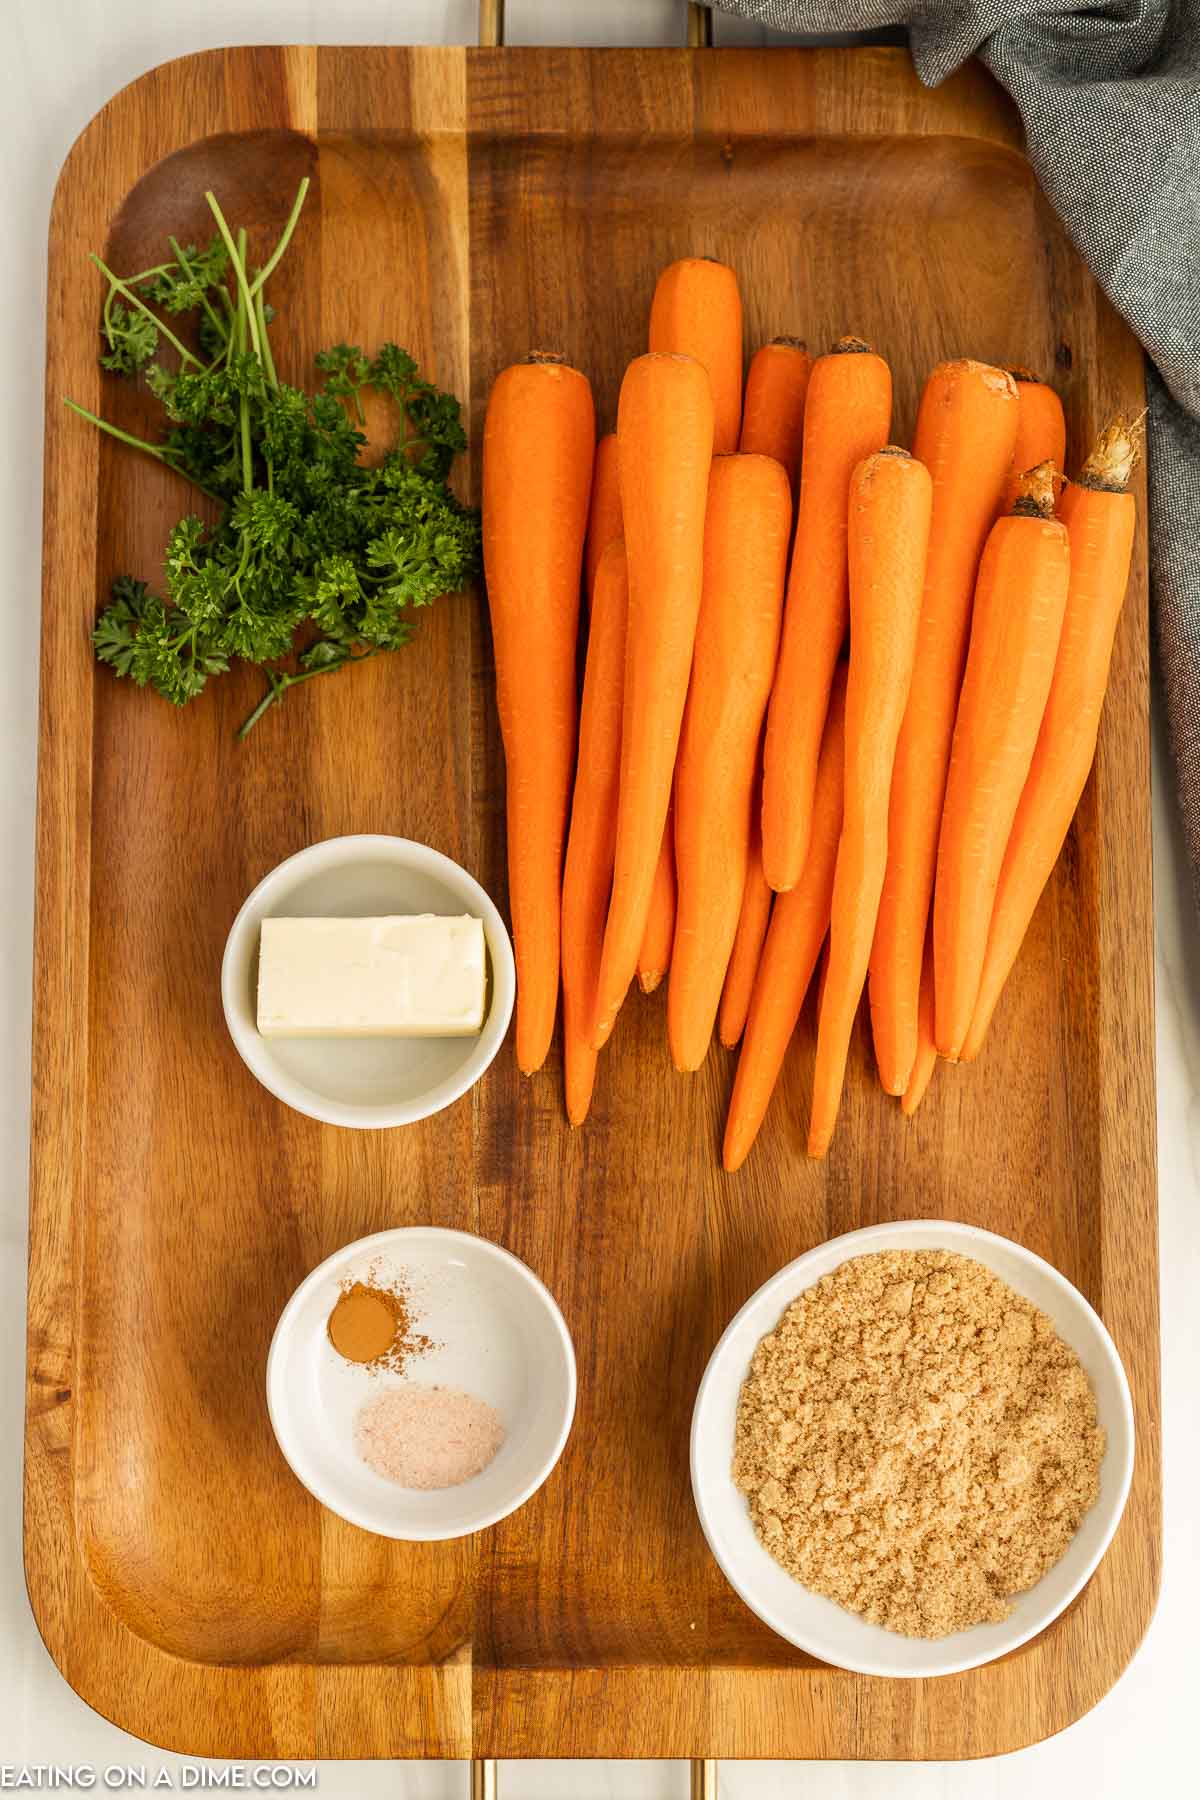 https://www.eatingonadime.com/wp-content/uploads/2022/11/cp-glazed-carrots-1.jpg